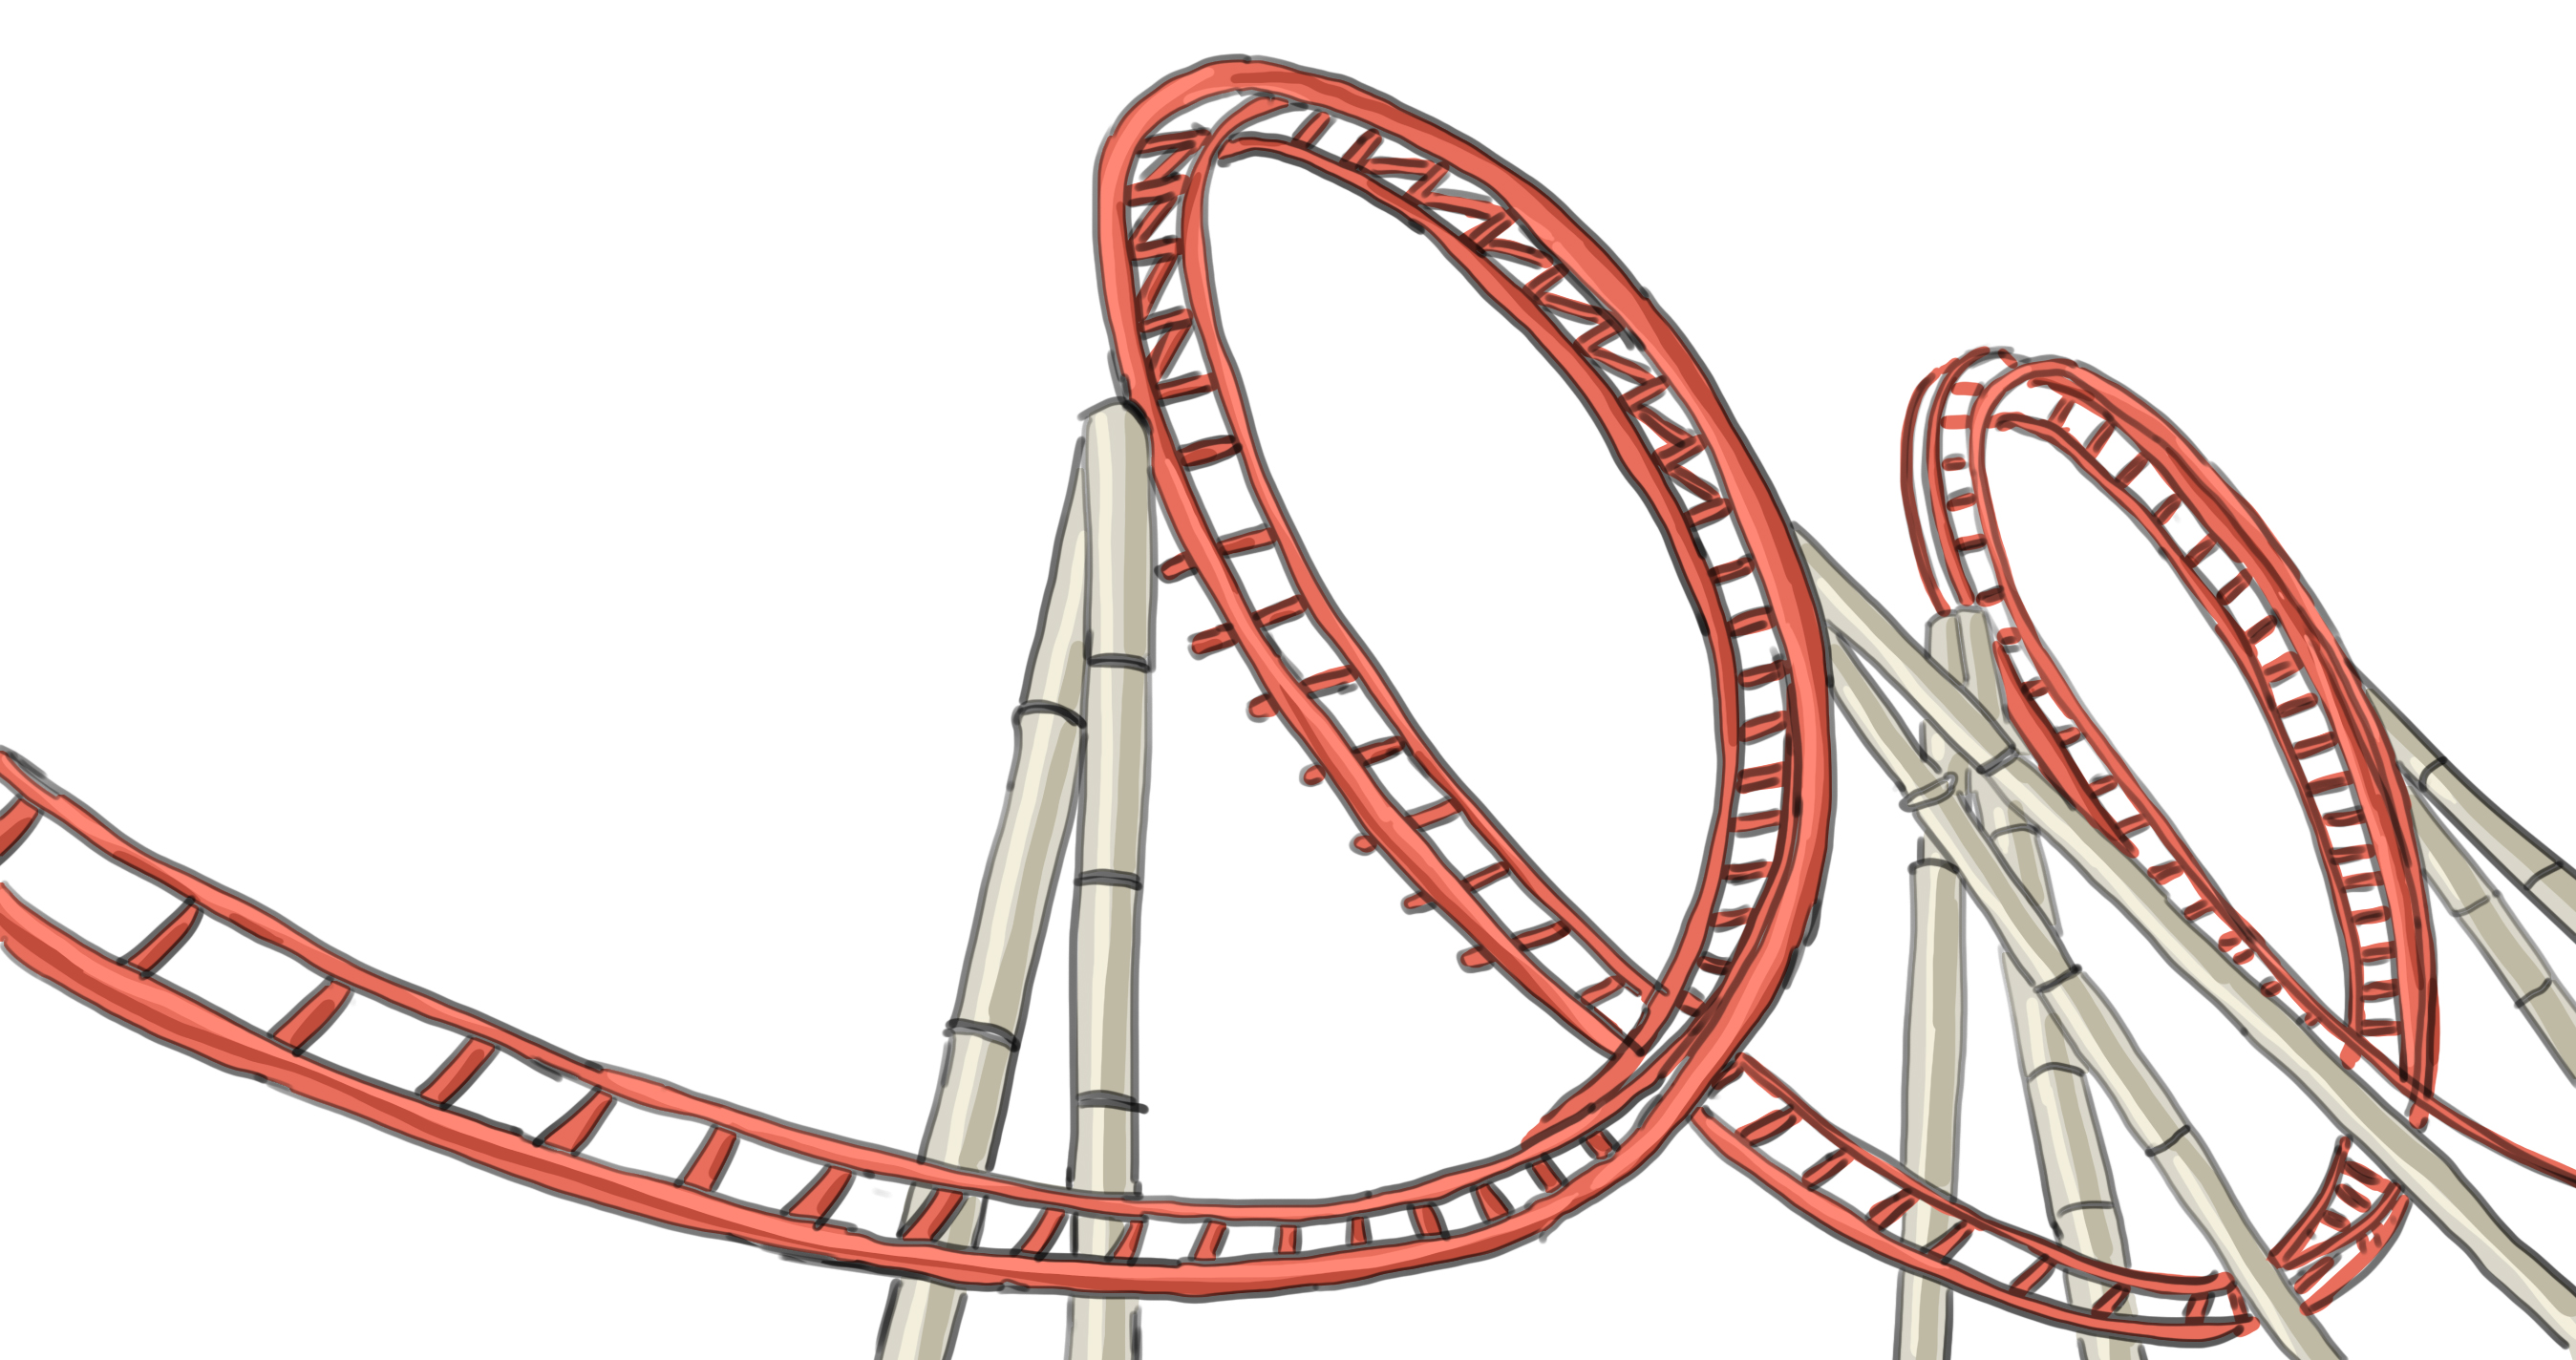 Roller coaster loop